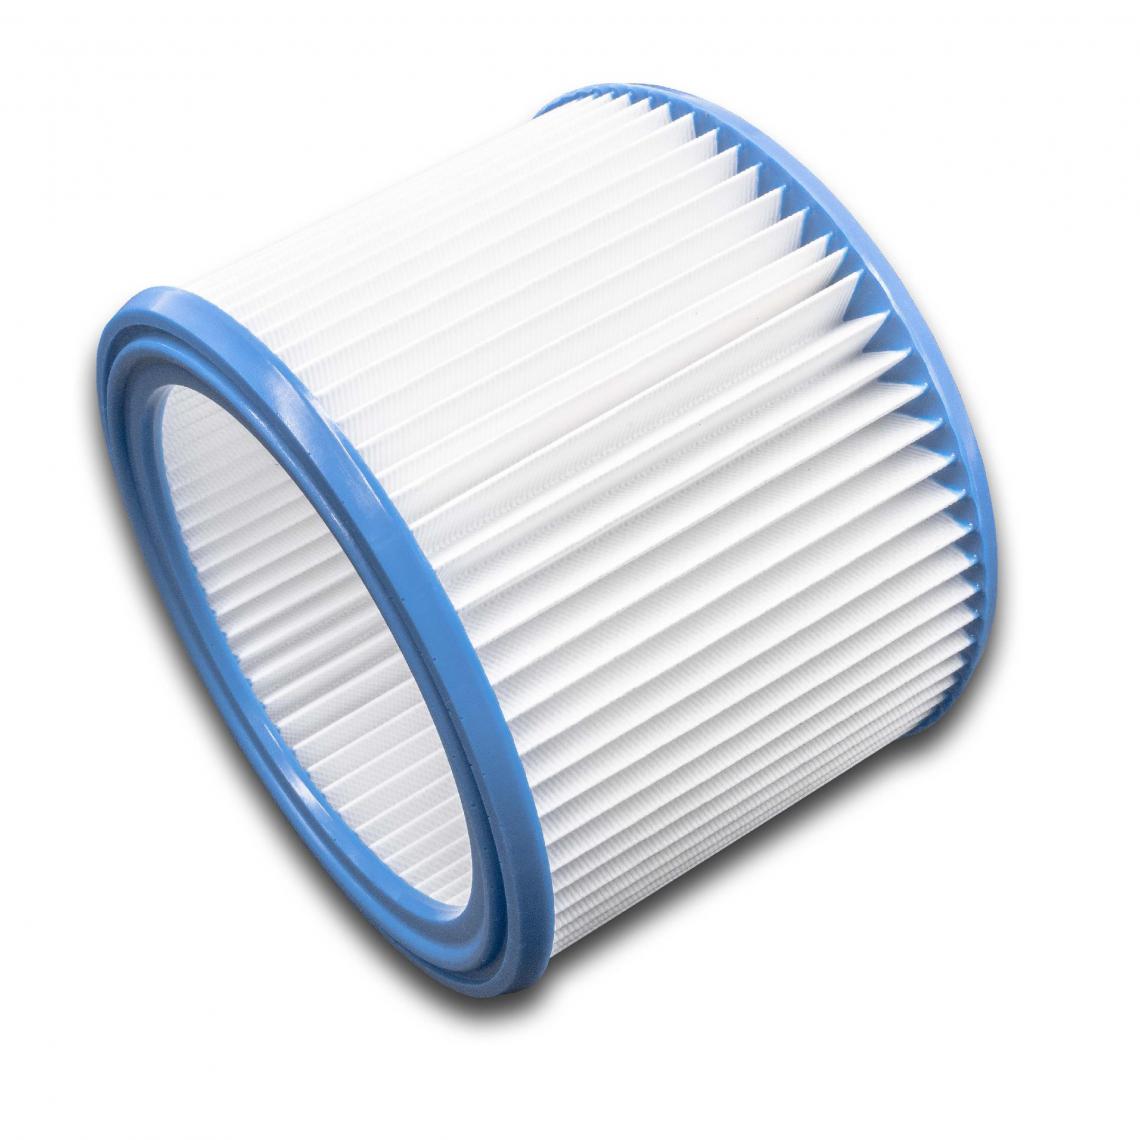 Vhbw - vhbw filtre rond à plis pour aspirateur multifonction, compatible avec WAP Turbo SSR, XL, XL-25, XL-E, EC-380 E, EURO 45522 - Cordons d'alimentation